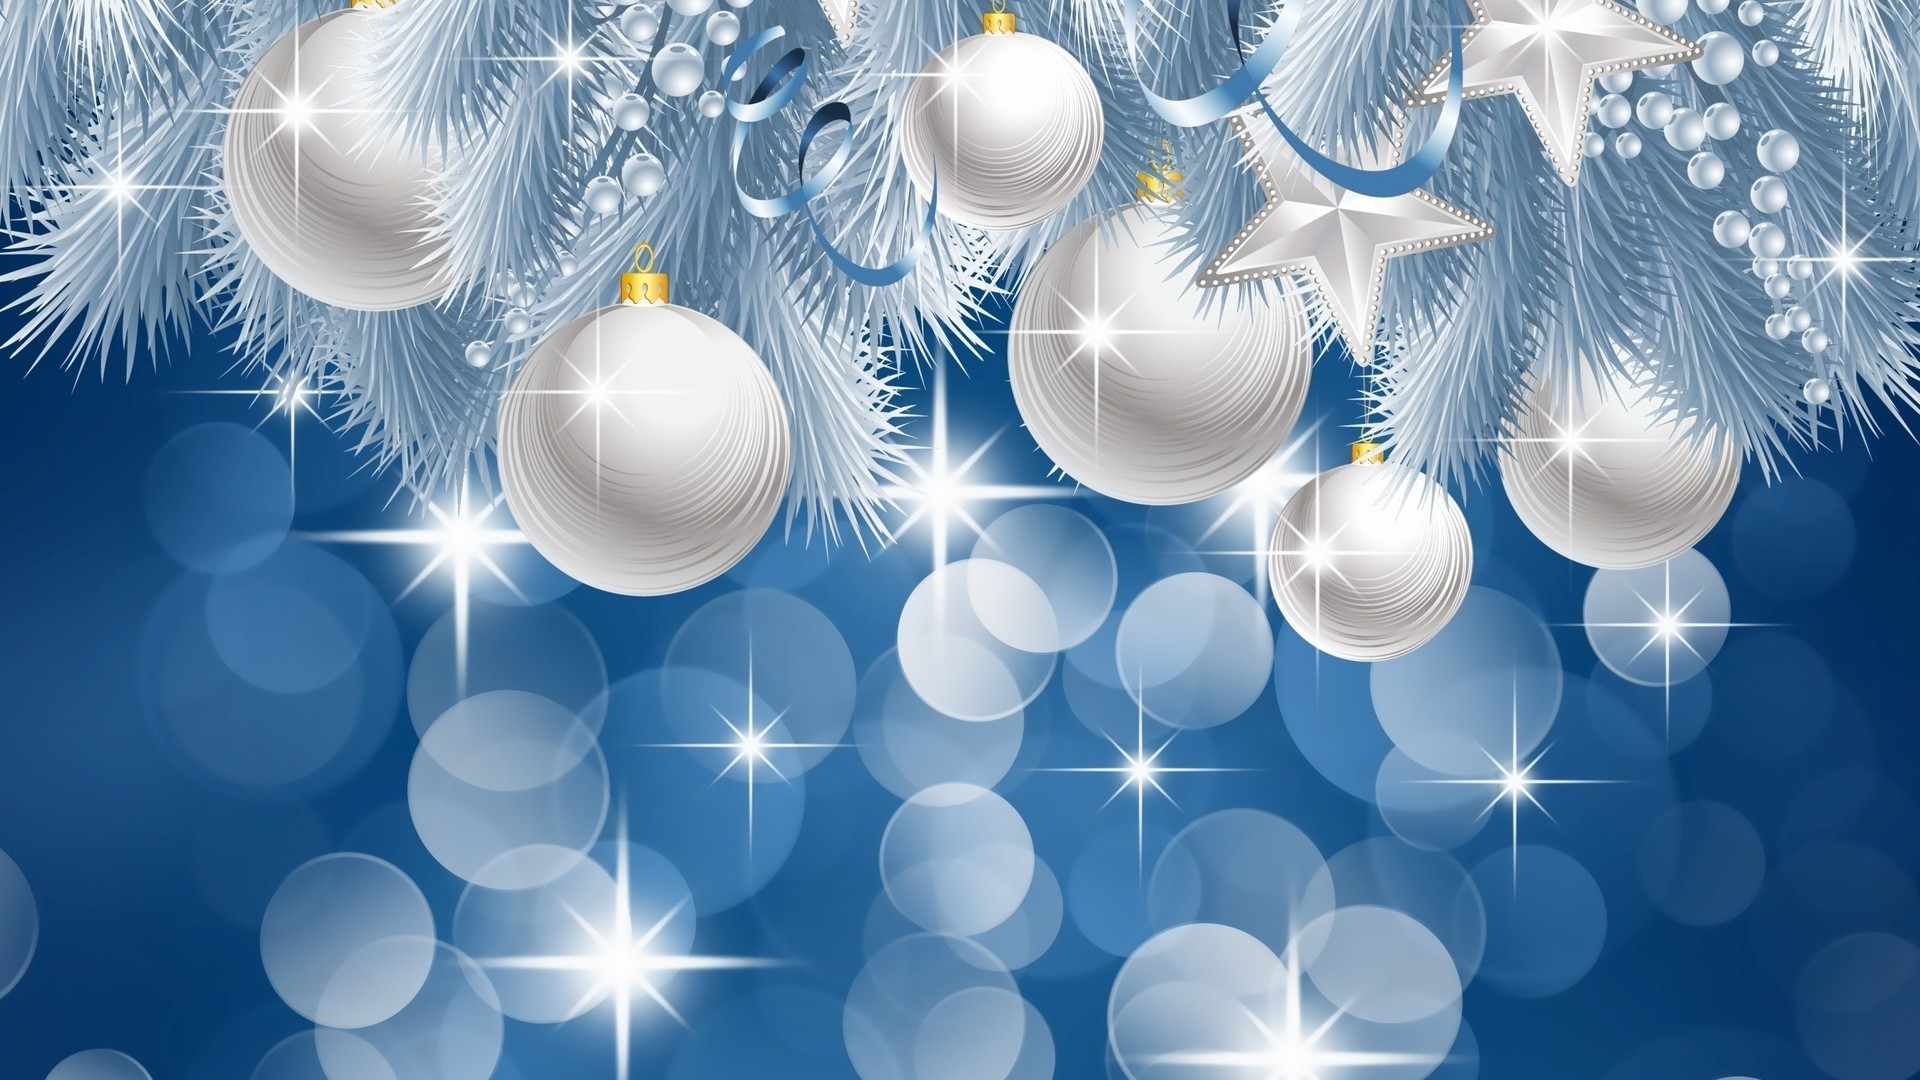 новый год аннотация иллюстрация дизайн рождество рабочего стола украшения шаблон обои график искусство снежинка фон вектор яркий светит мерри формы свет